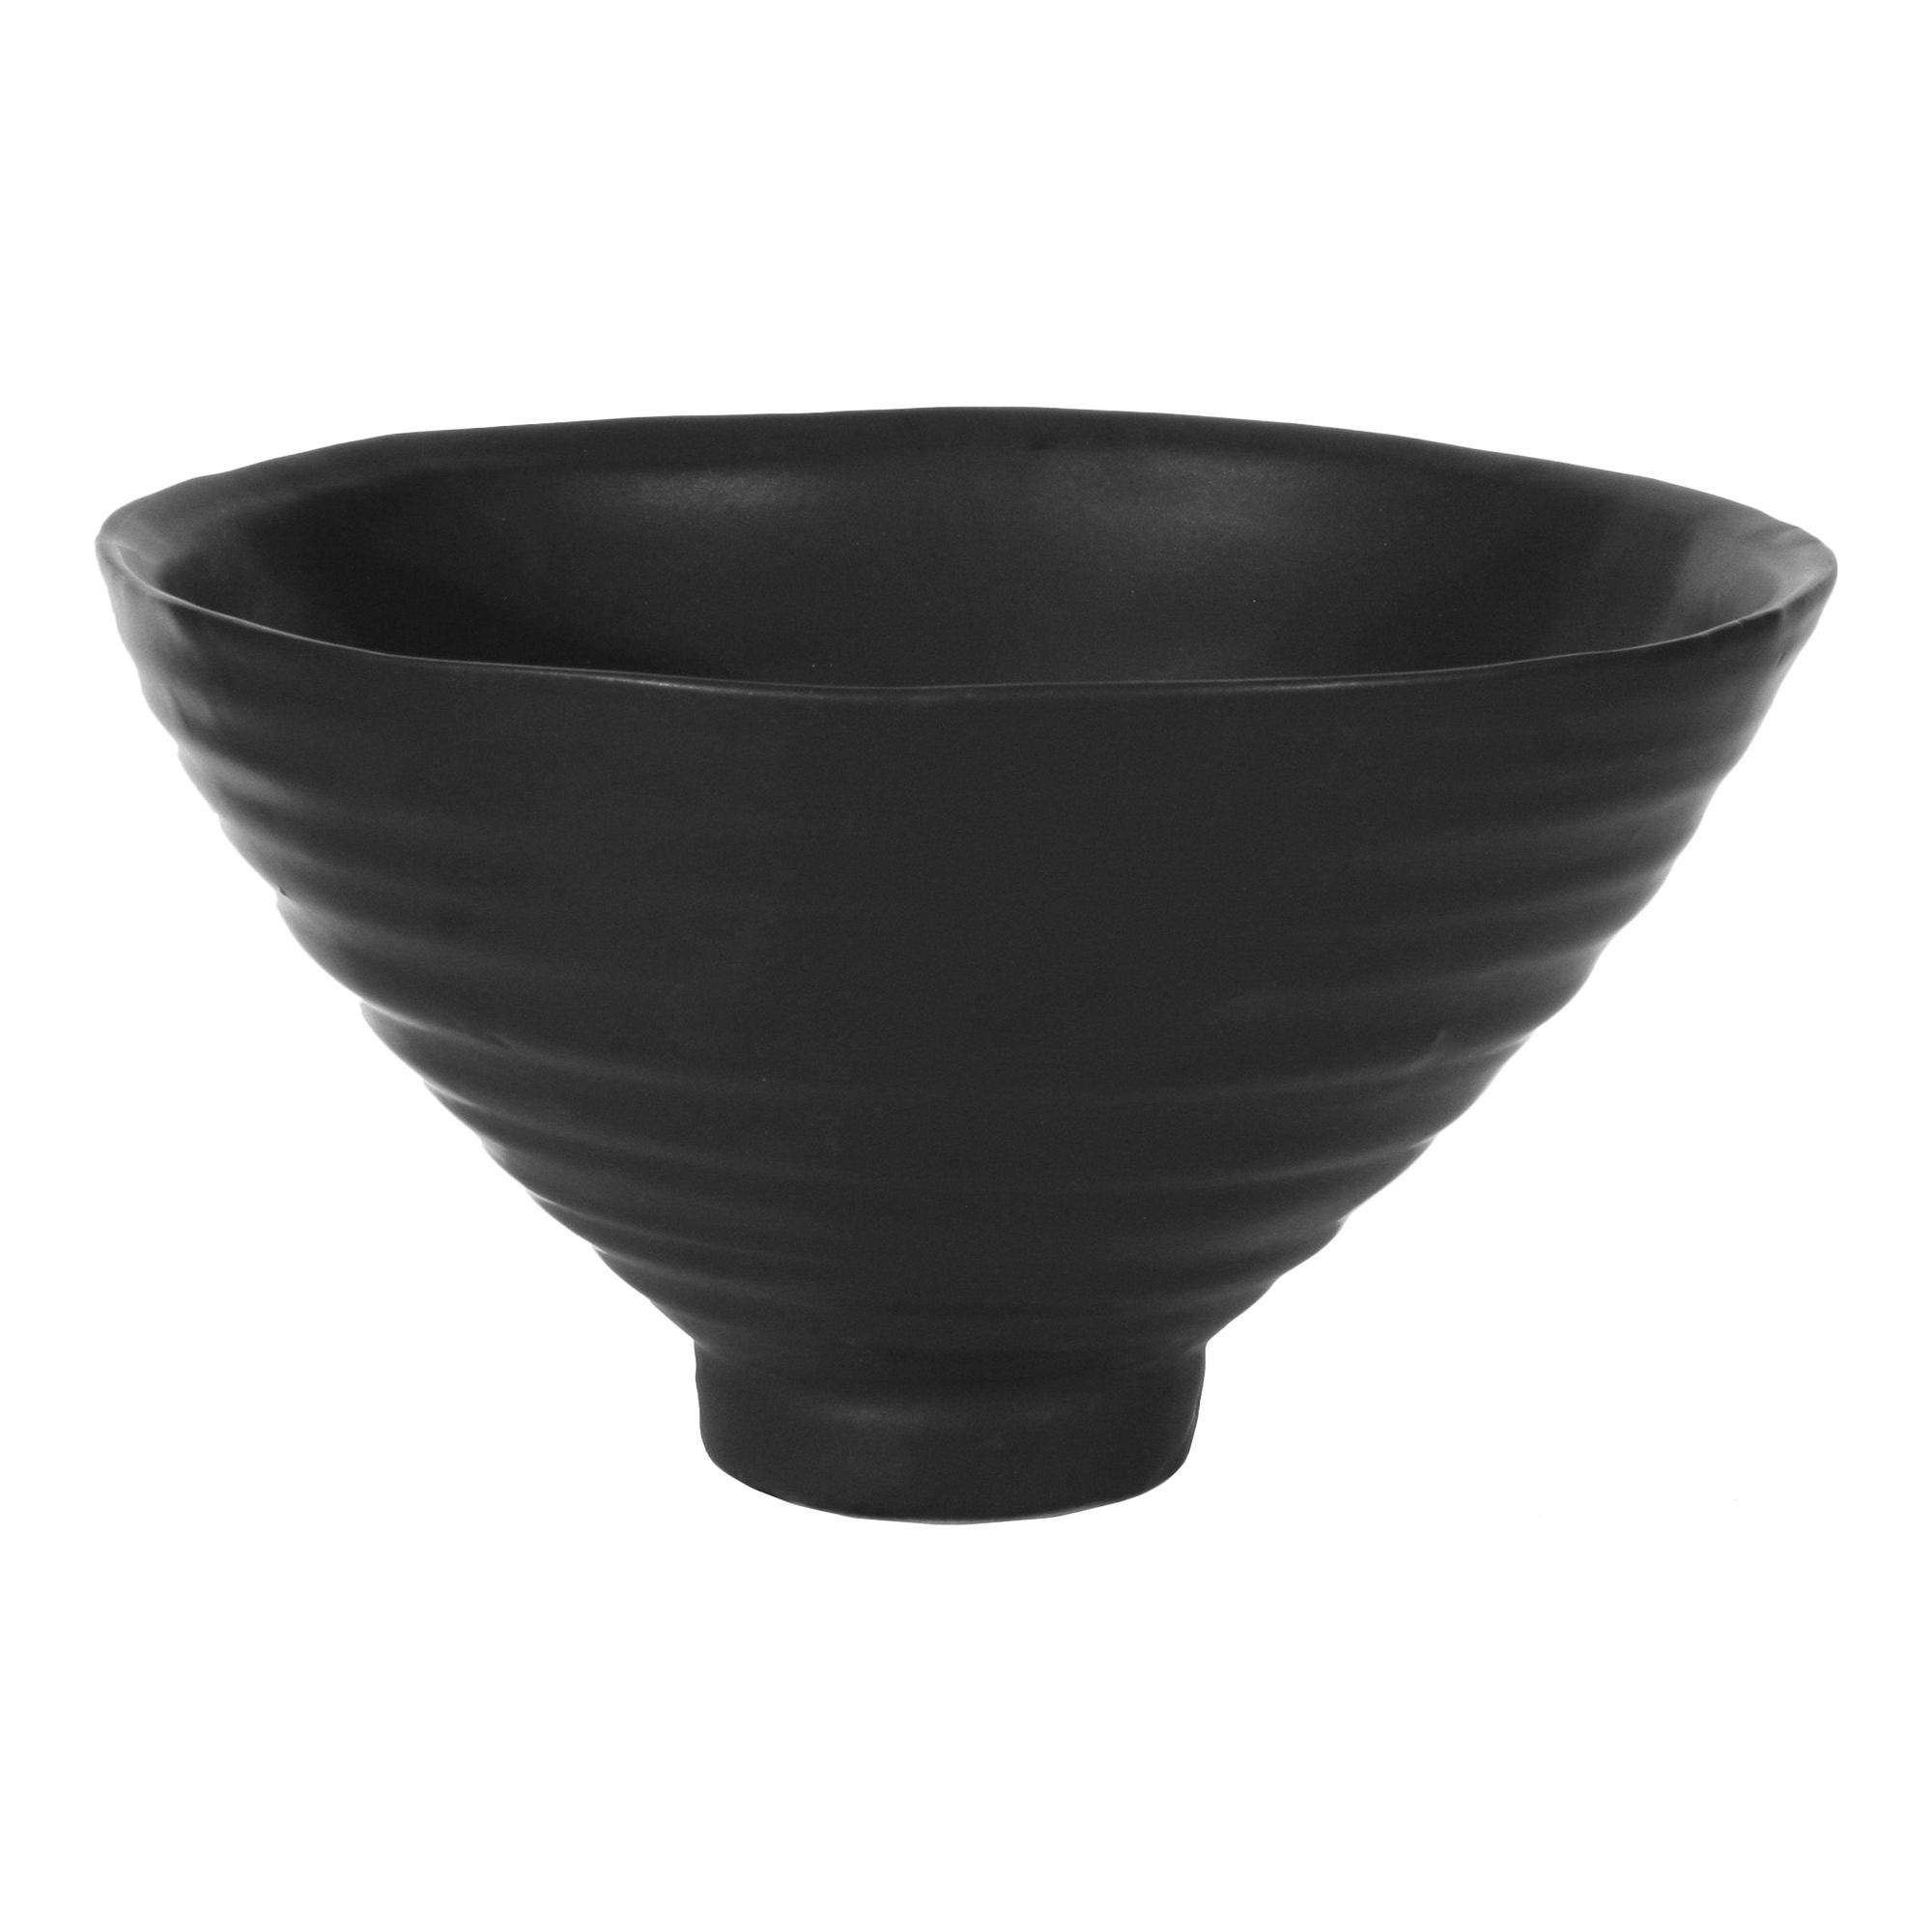 Raven Bowl in Black Ceramic by CuratedKravet